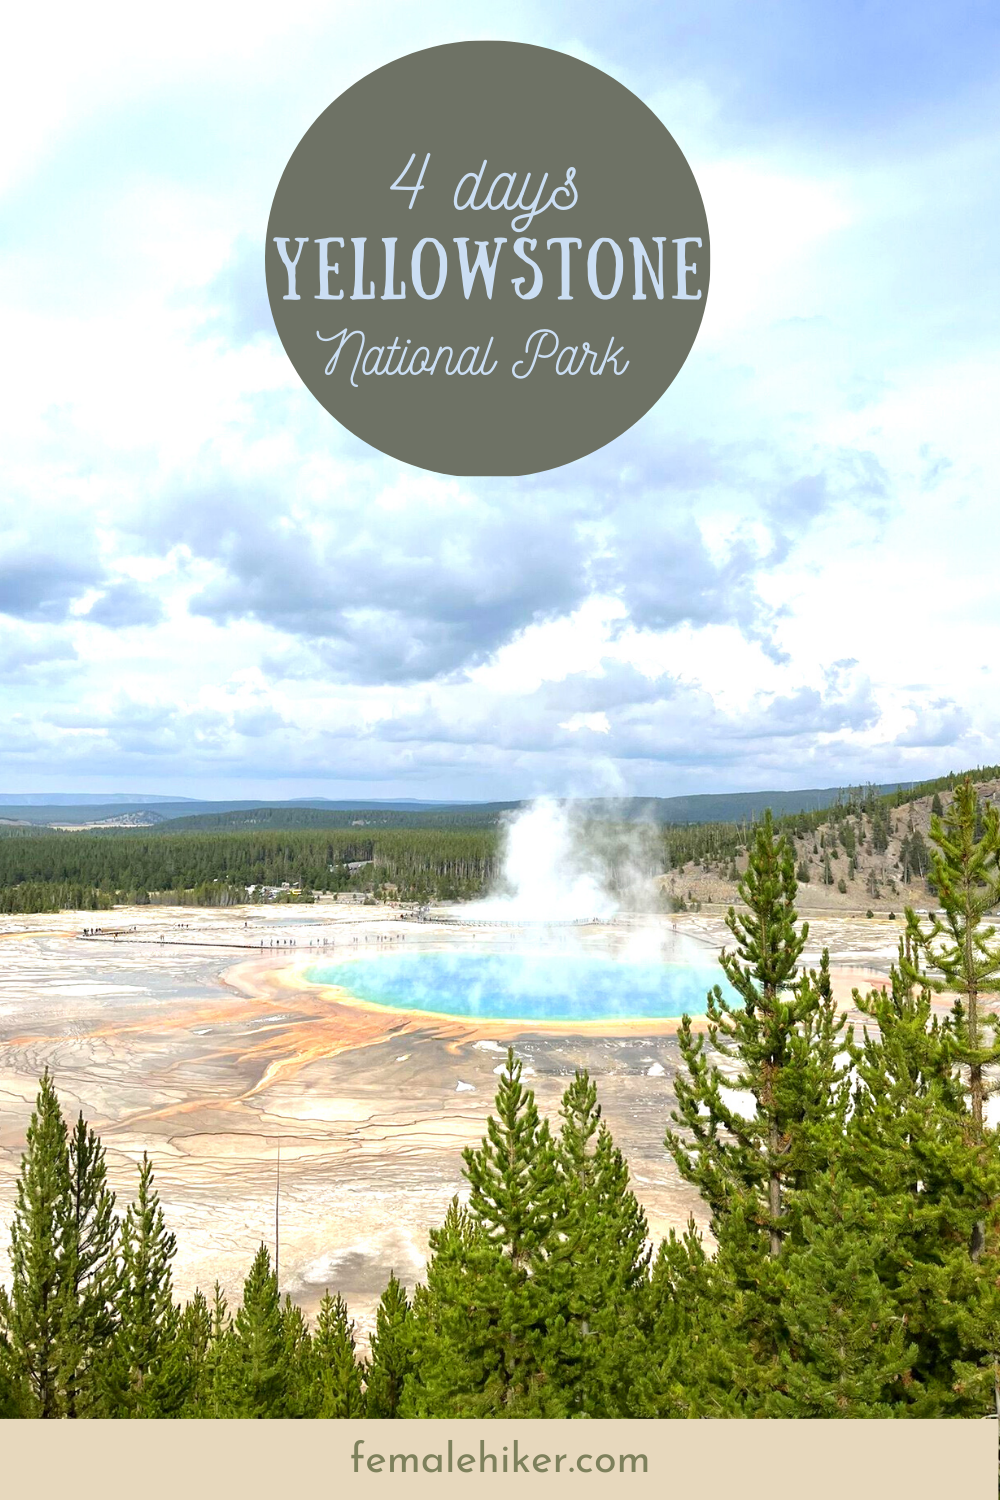 Yellowstone 4 day itinerary